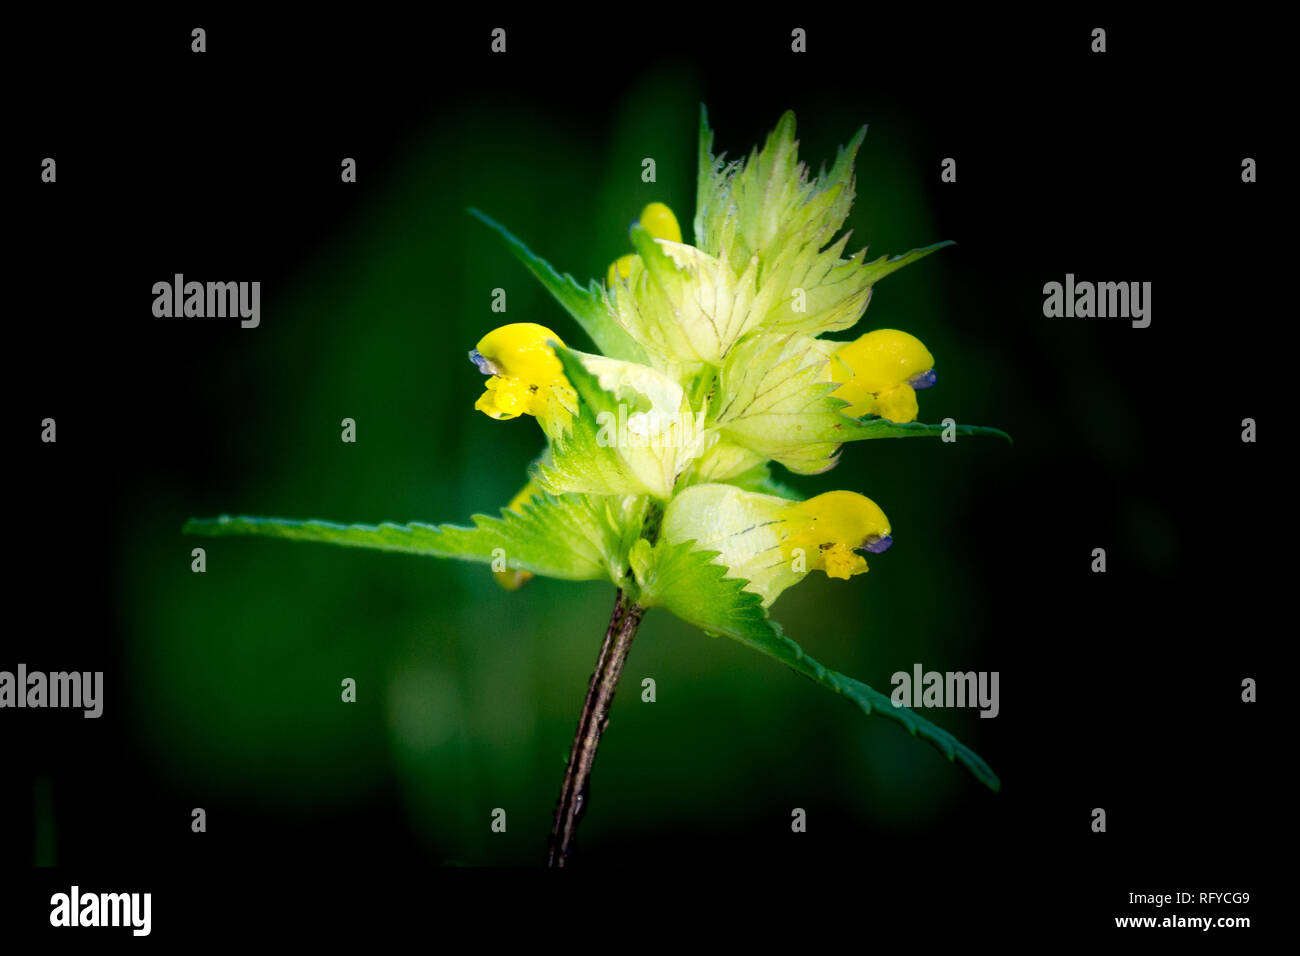 Hochet jaune sauvage croissant parmi les graminées à Eton. En permettant le hochet de croître, la croissance des graminées est supprimée et d'autres fleurs sauvages autorisés à se développer. Banque D'Images